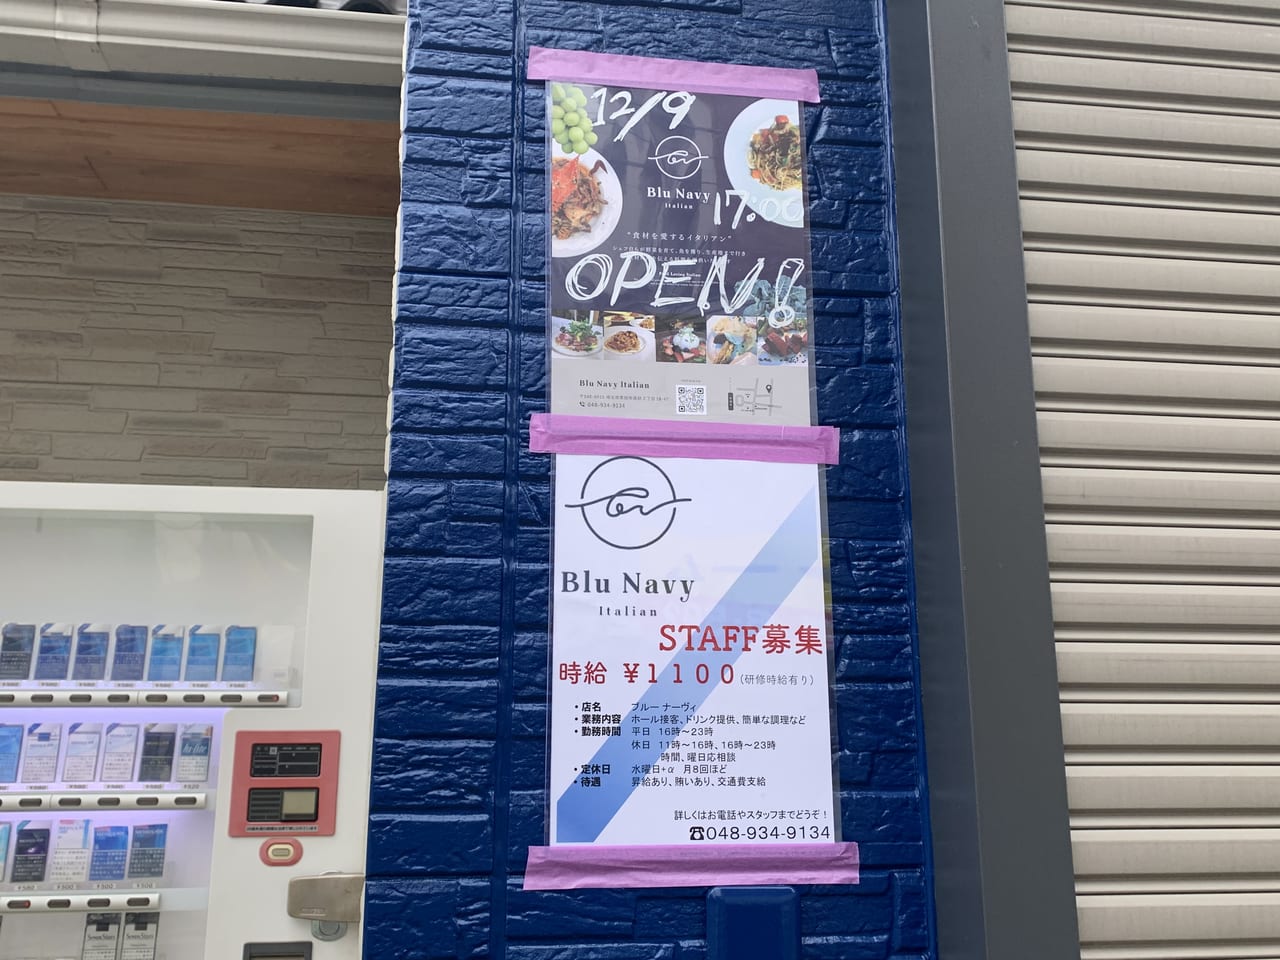 【草加市】〈開店情報〉まもなく、旧日光街道沿いにイタリアンのお店「Blu Navy(ブルーナーヴィ)」がオープンします！ | 号外NET 草加市